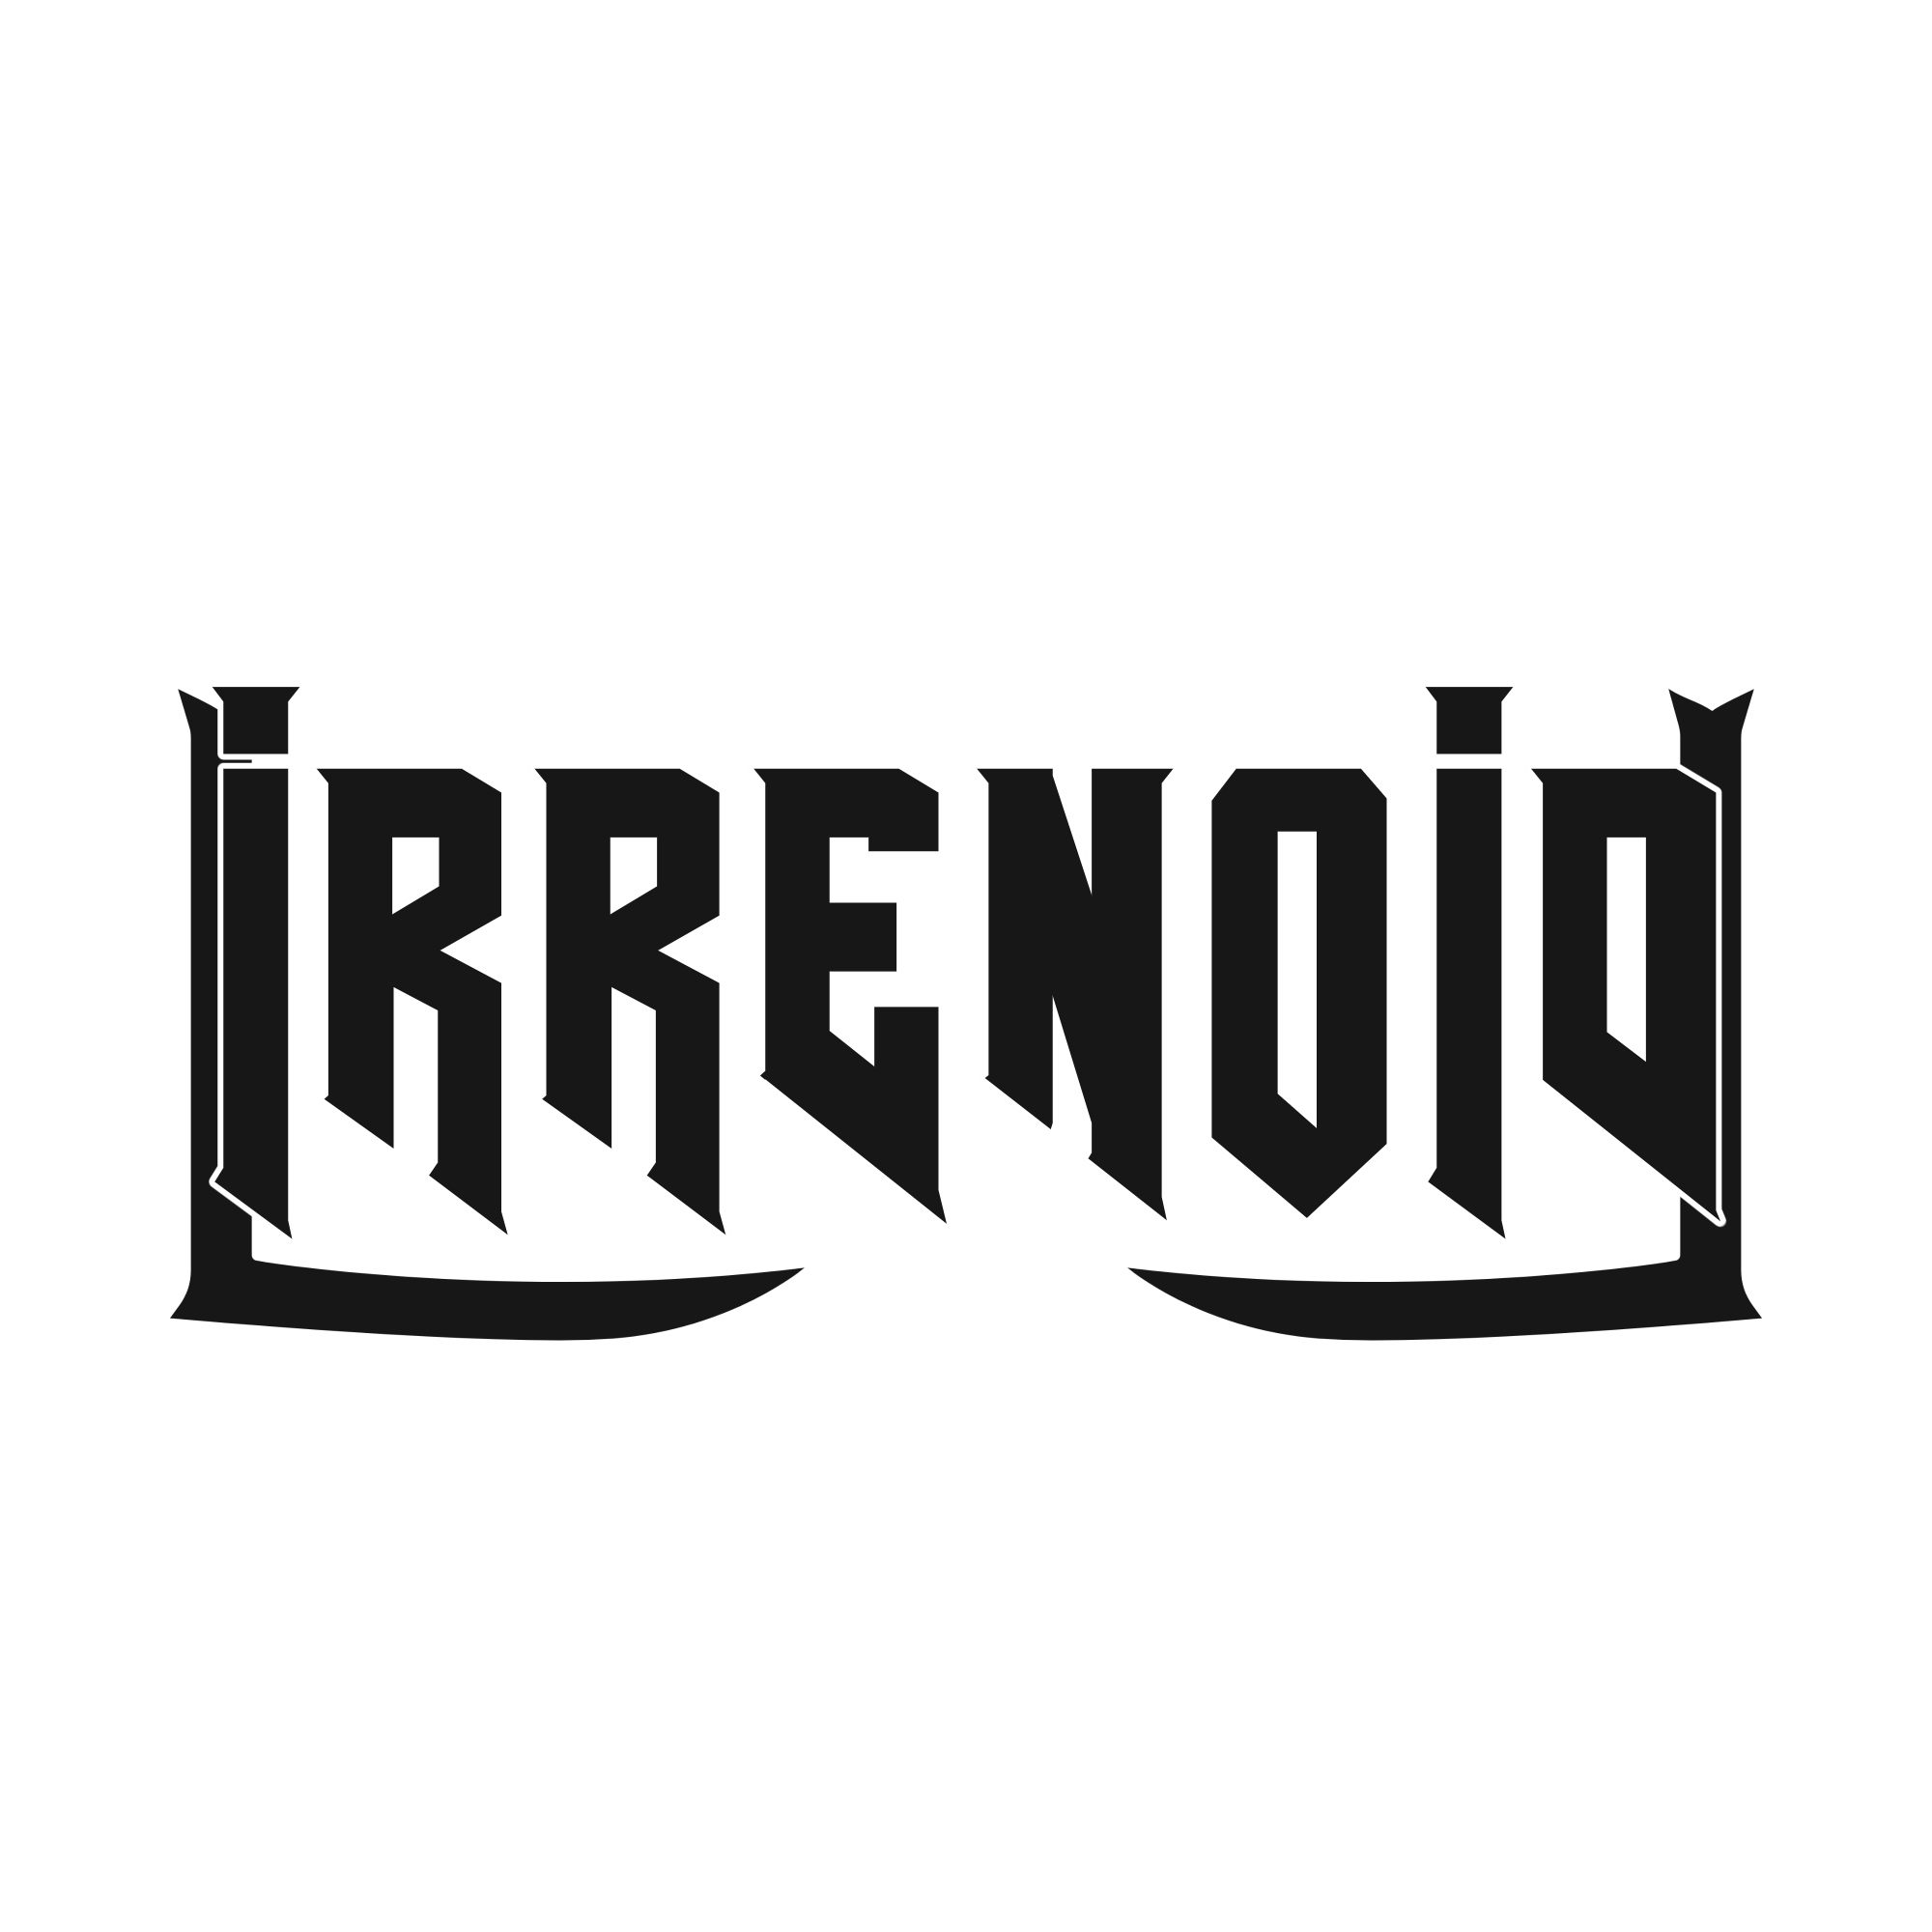 Irrenoid